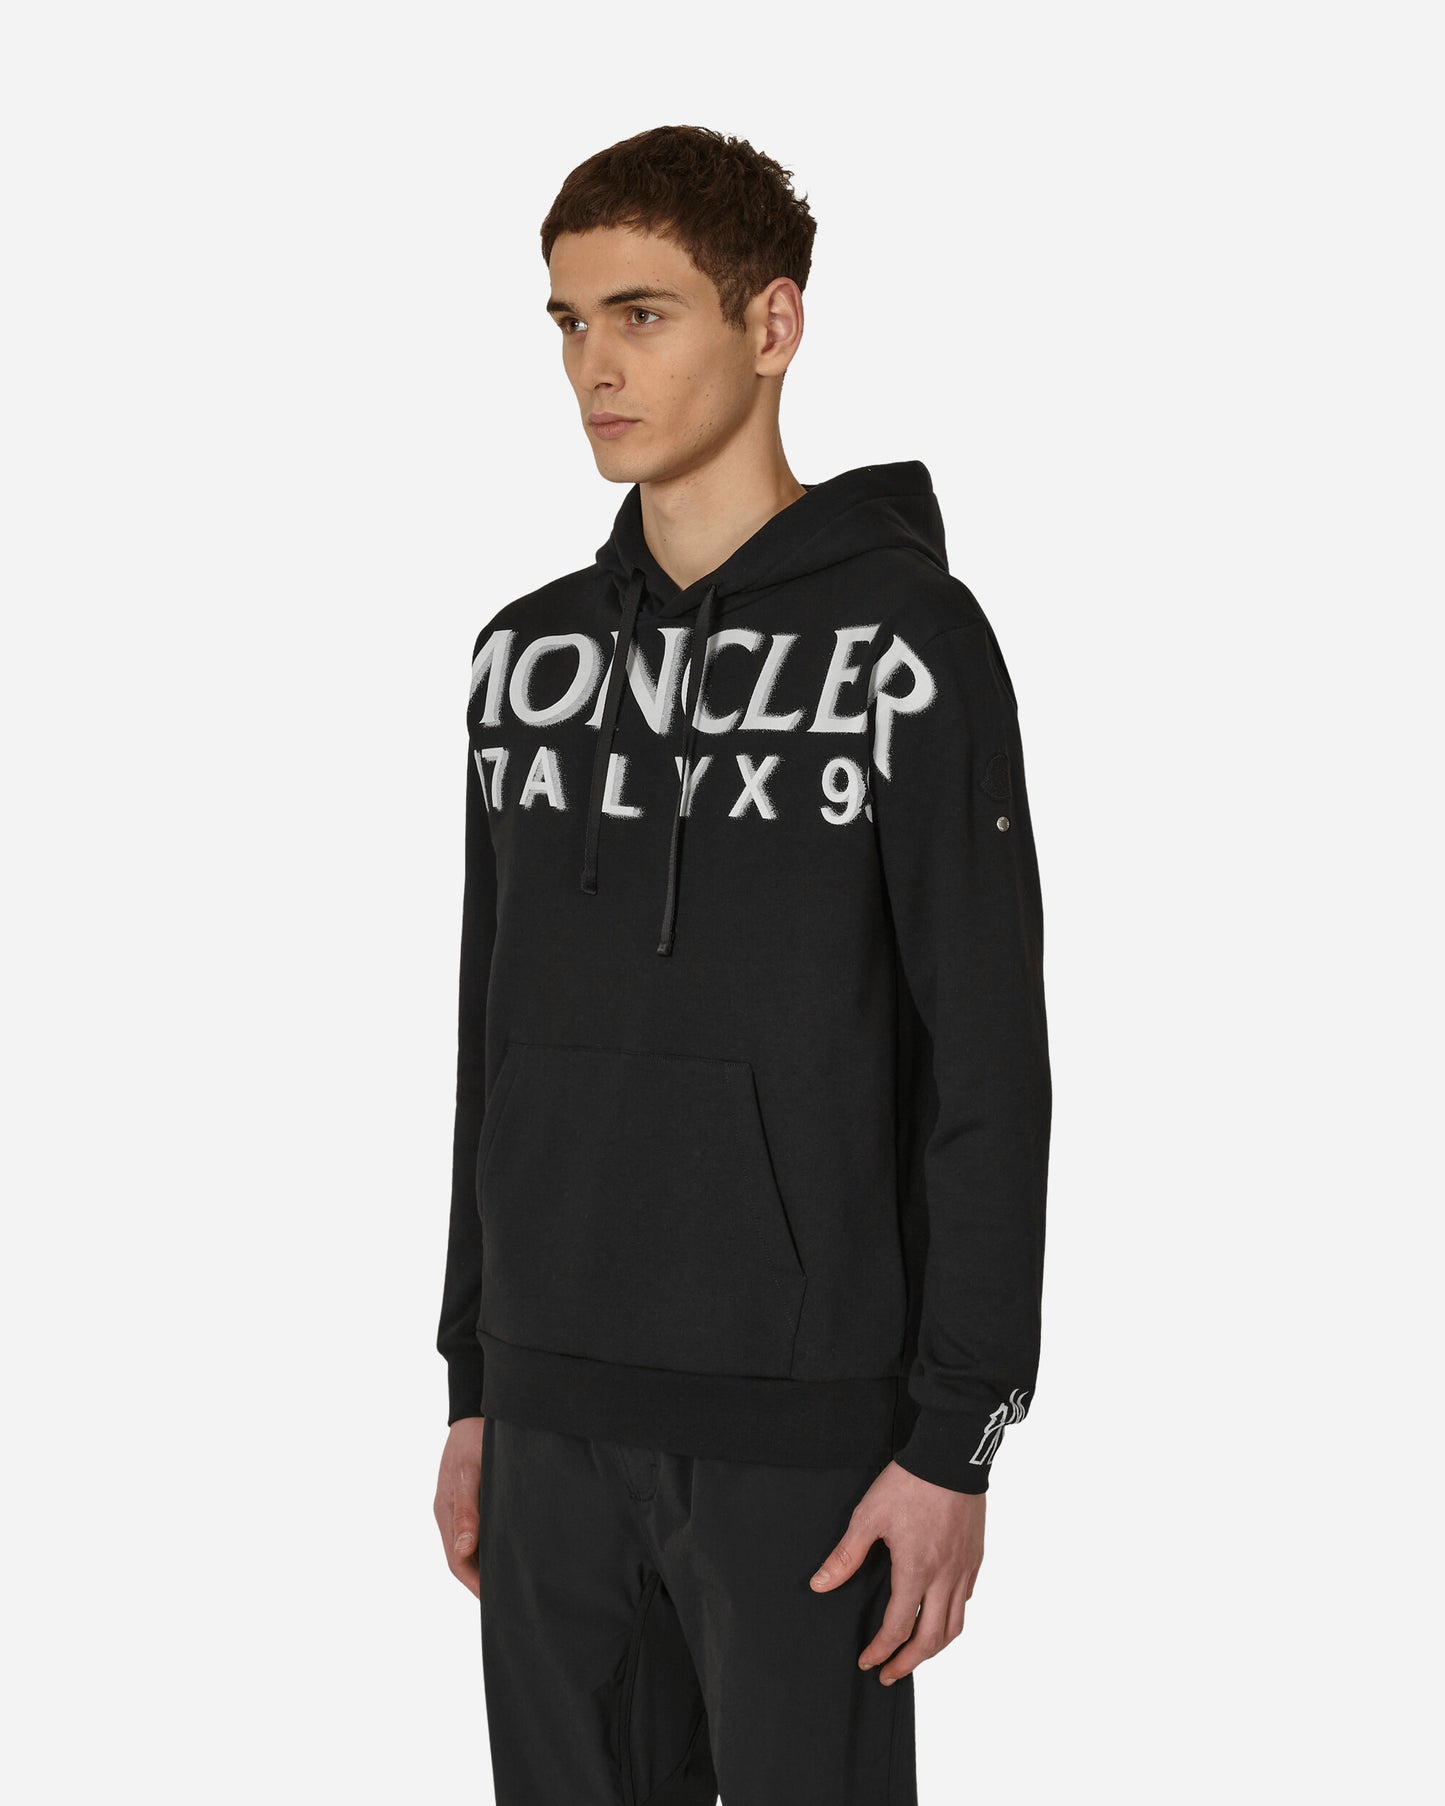 Moncler Genius Hoodie Sweater Black Sweatshirts Hoodies 8G00001M2781 999